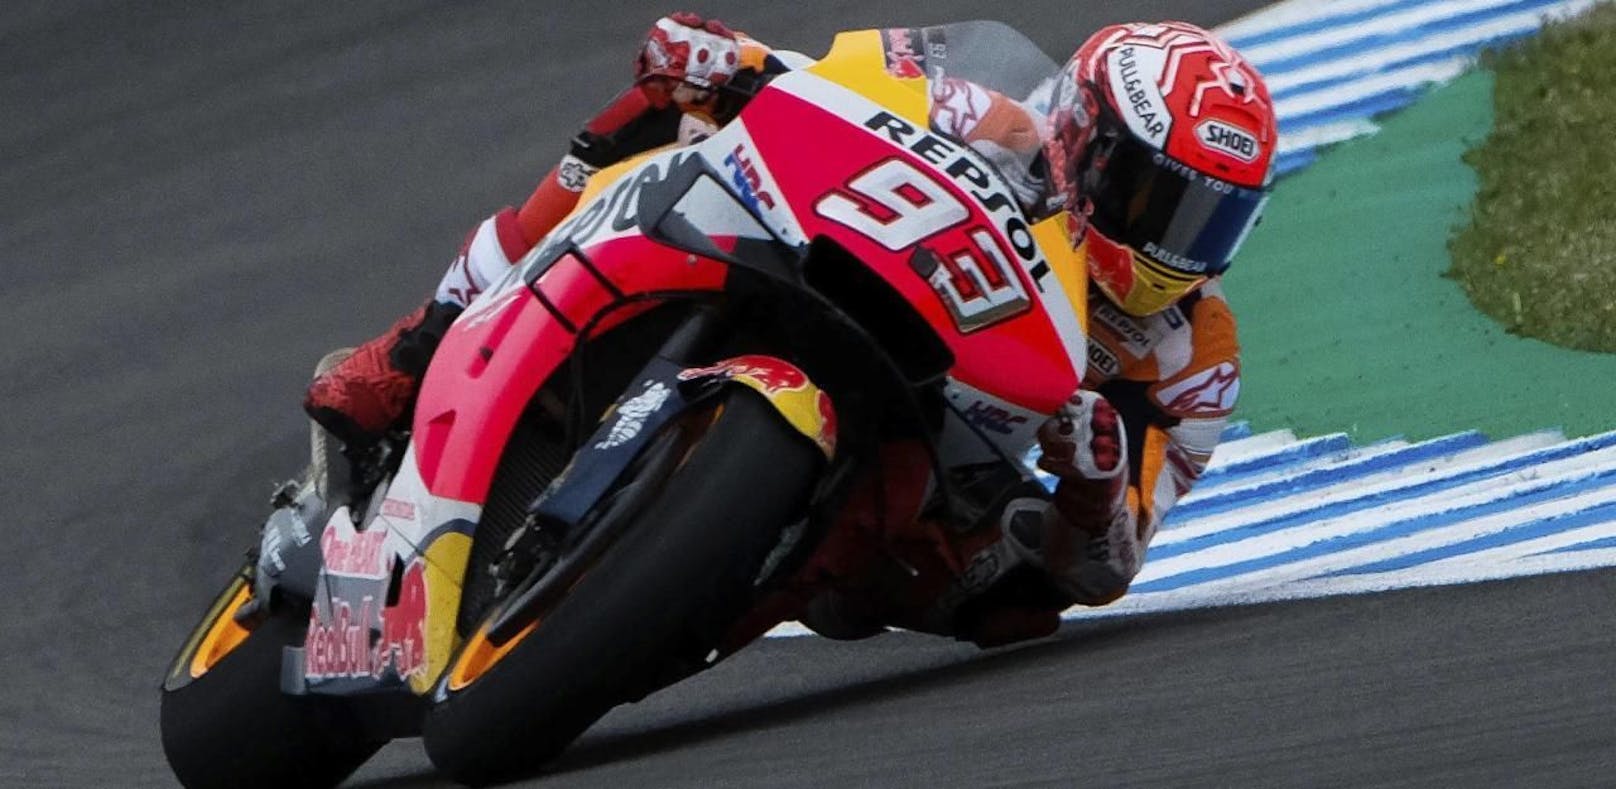 MotoGP-Star Marquez holt den Heimsieg in Jerez